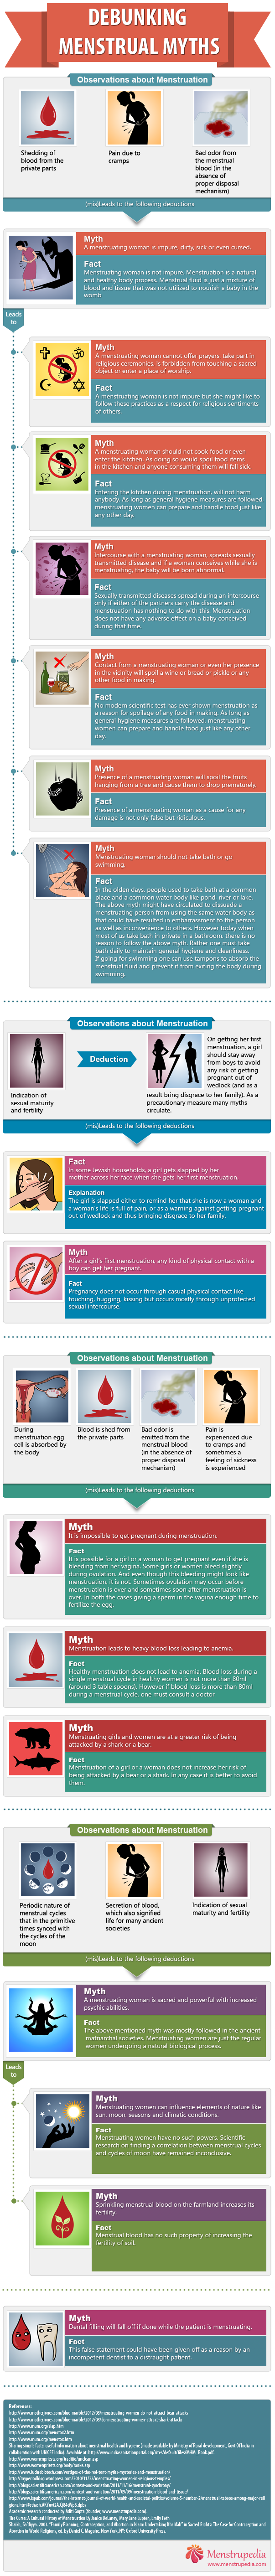 Menstrual myths debunked infographic